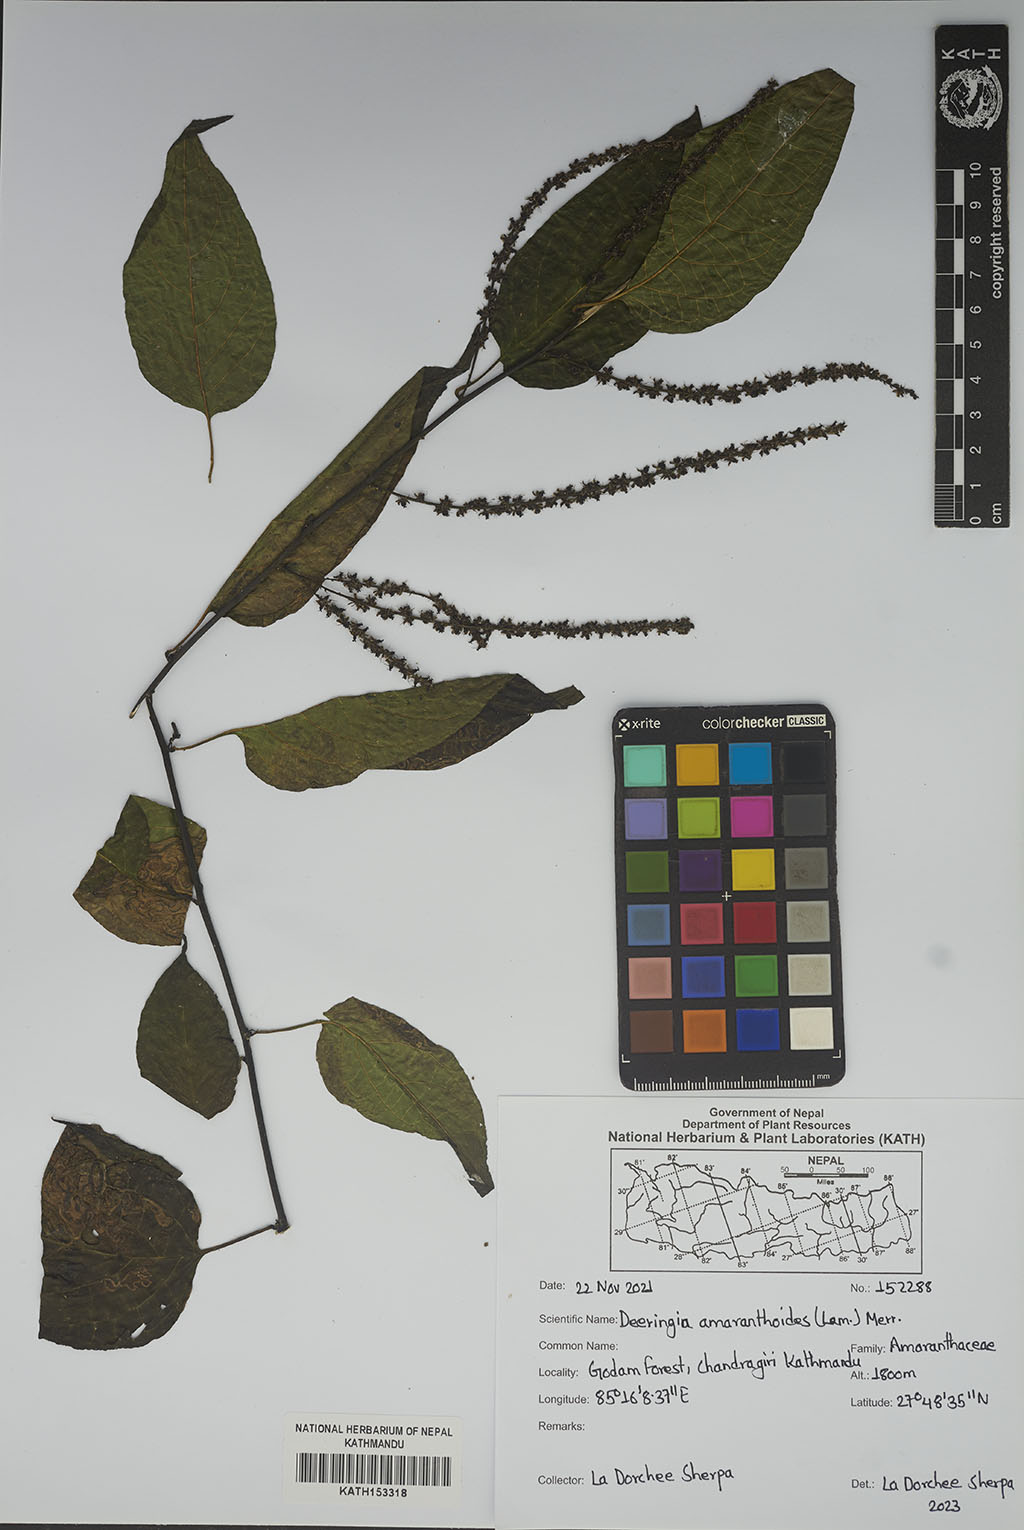 Deeringia amaranthoides (Lam.) Merr.